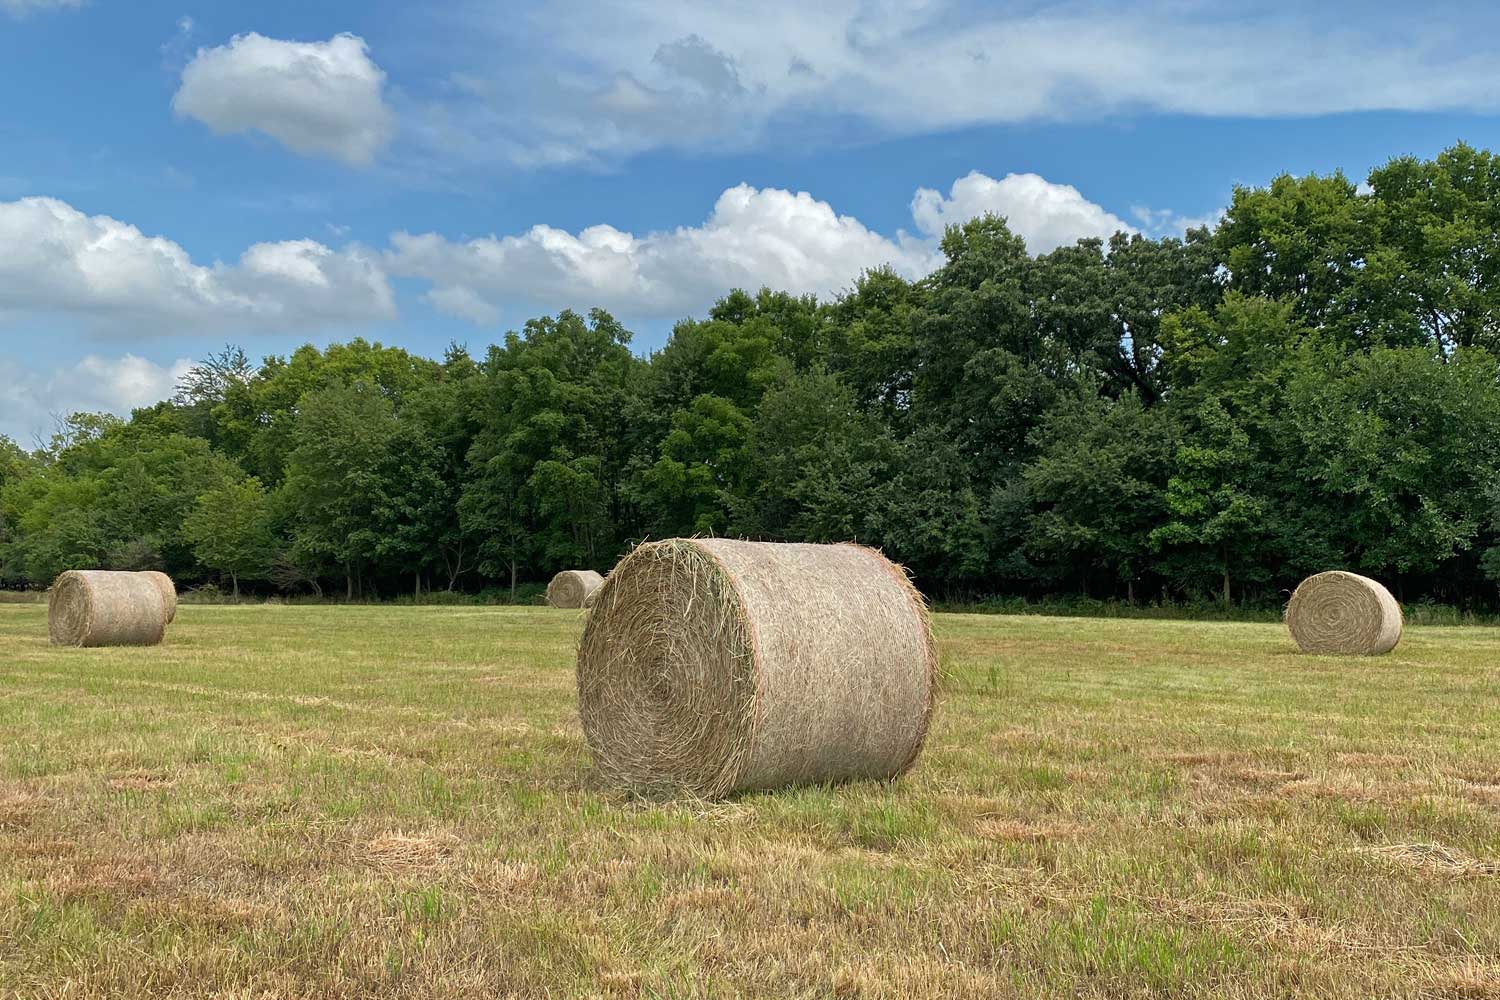 Hay rolls in a field near trees.